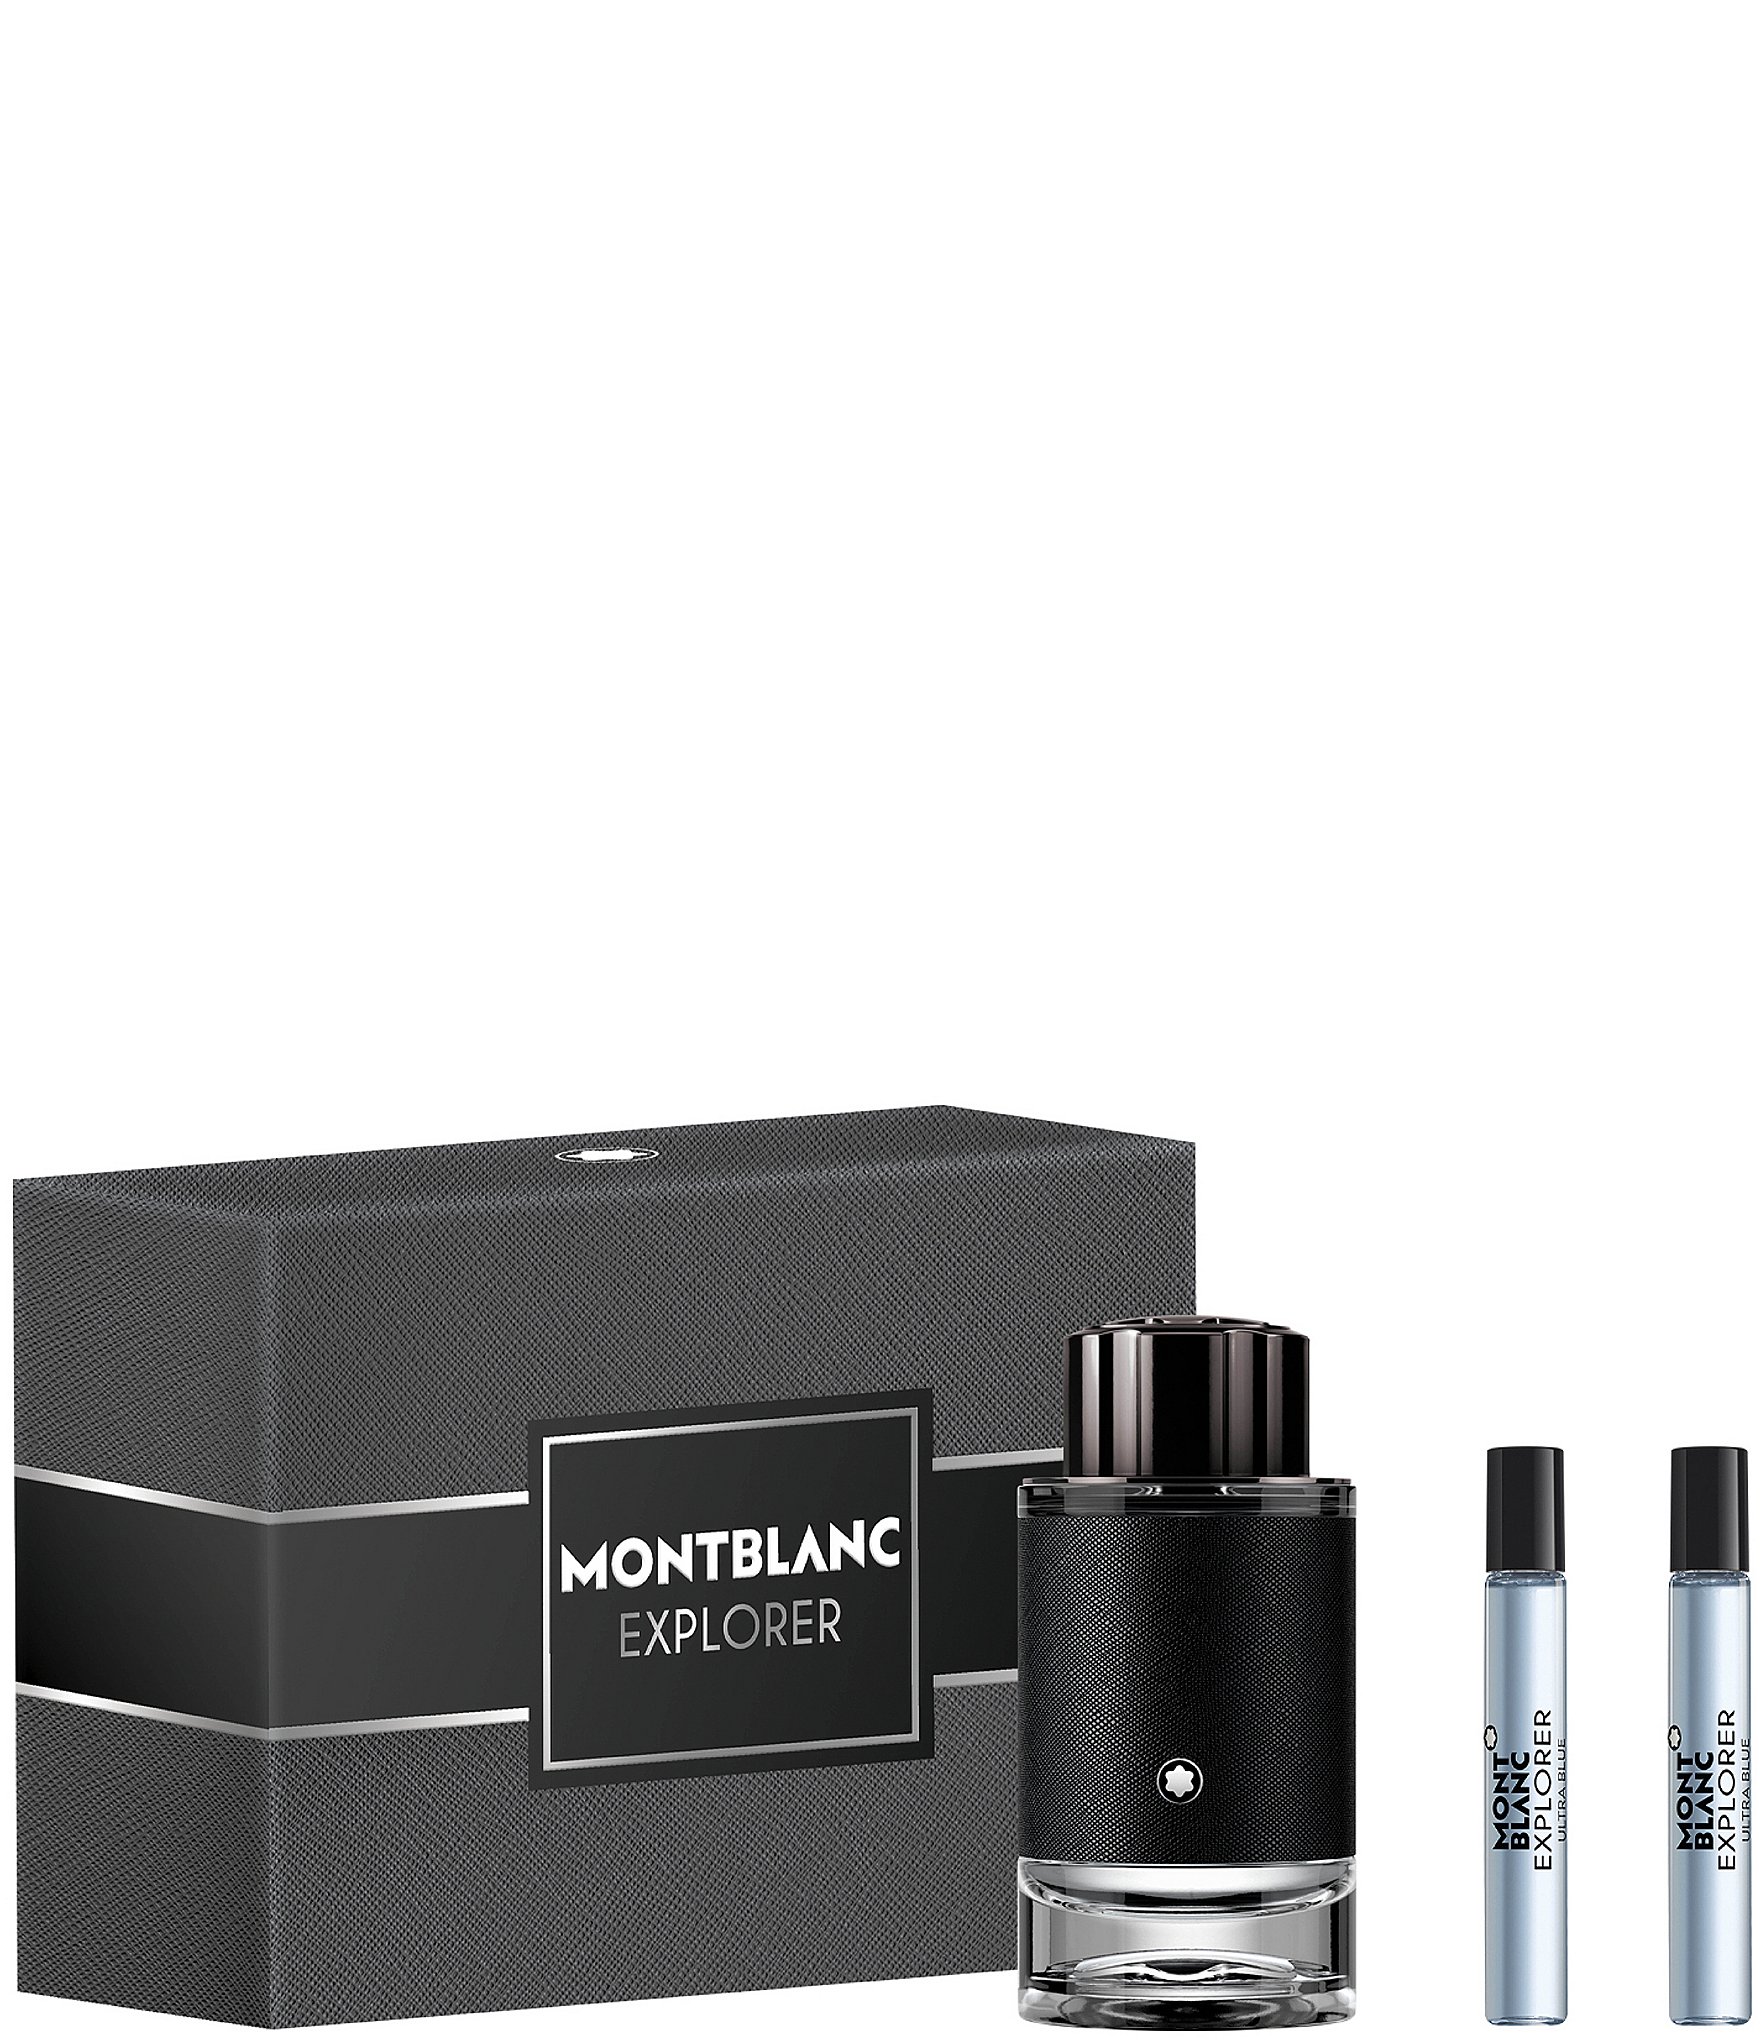 Montblanc Men's Fragrance & Cologne Gifts & Value Sets | Dillard's